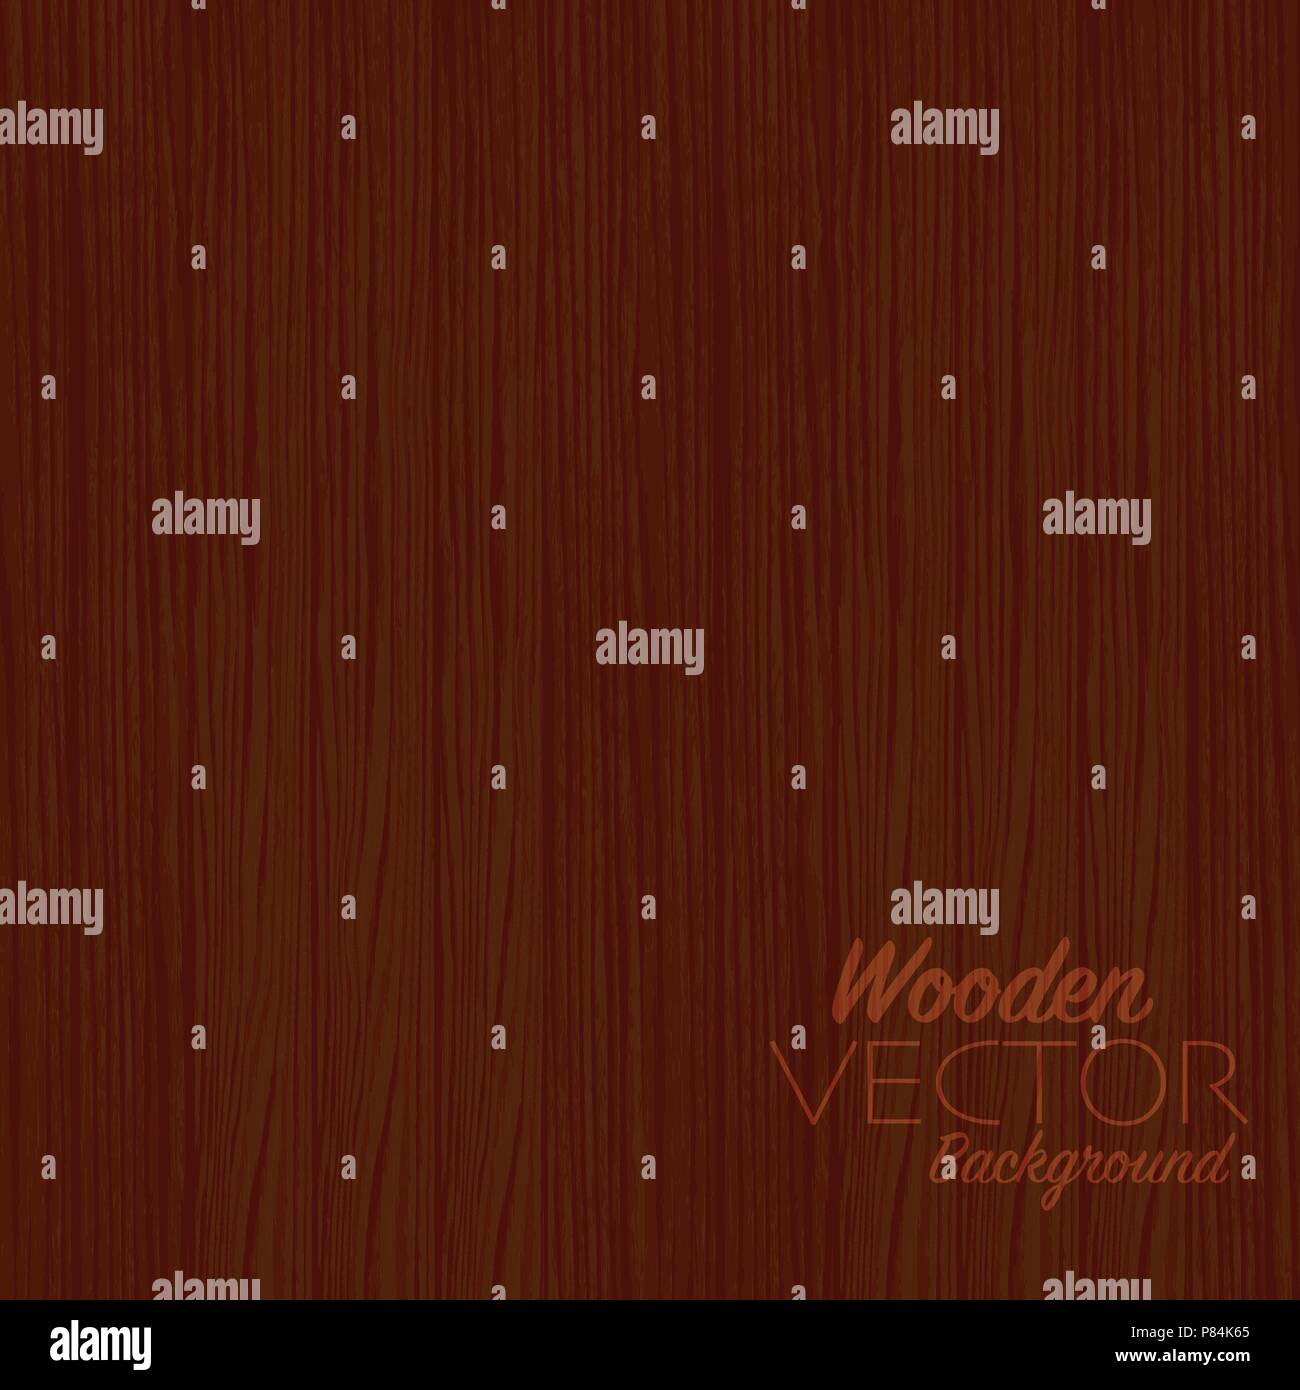 Blick von oben auf die Holz- Desktop Oberfläche, braun Holz- Textur für Designelemente, abstrakten Hintergrund Vector Illustration. Stock Vektor